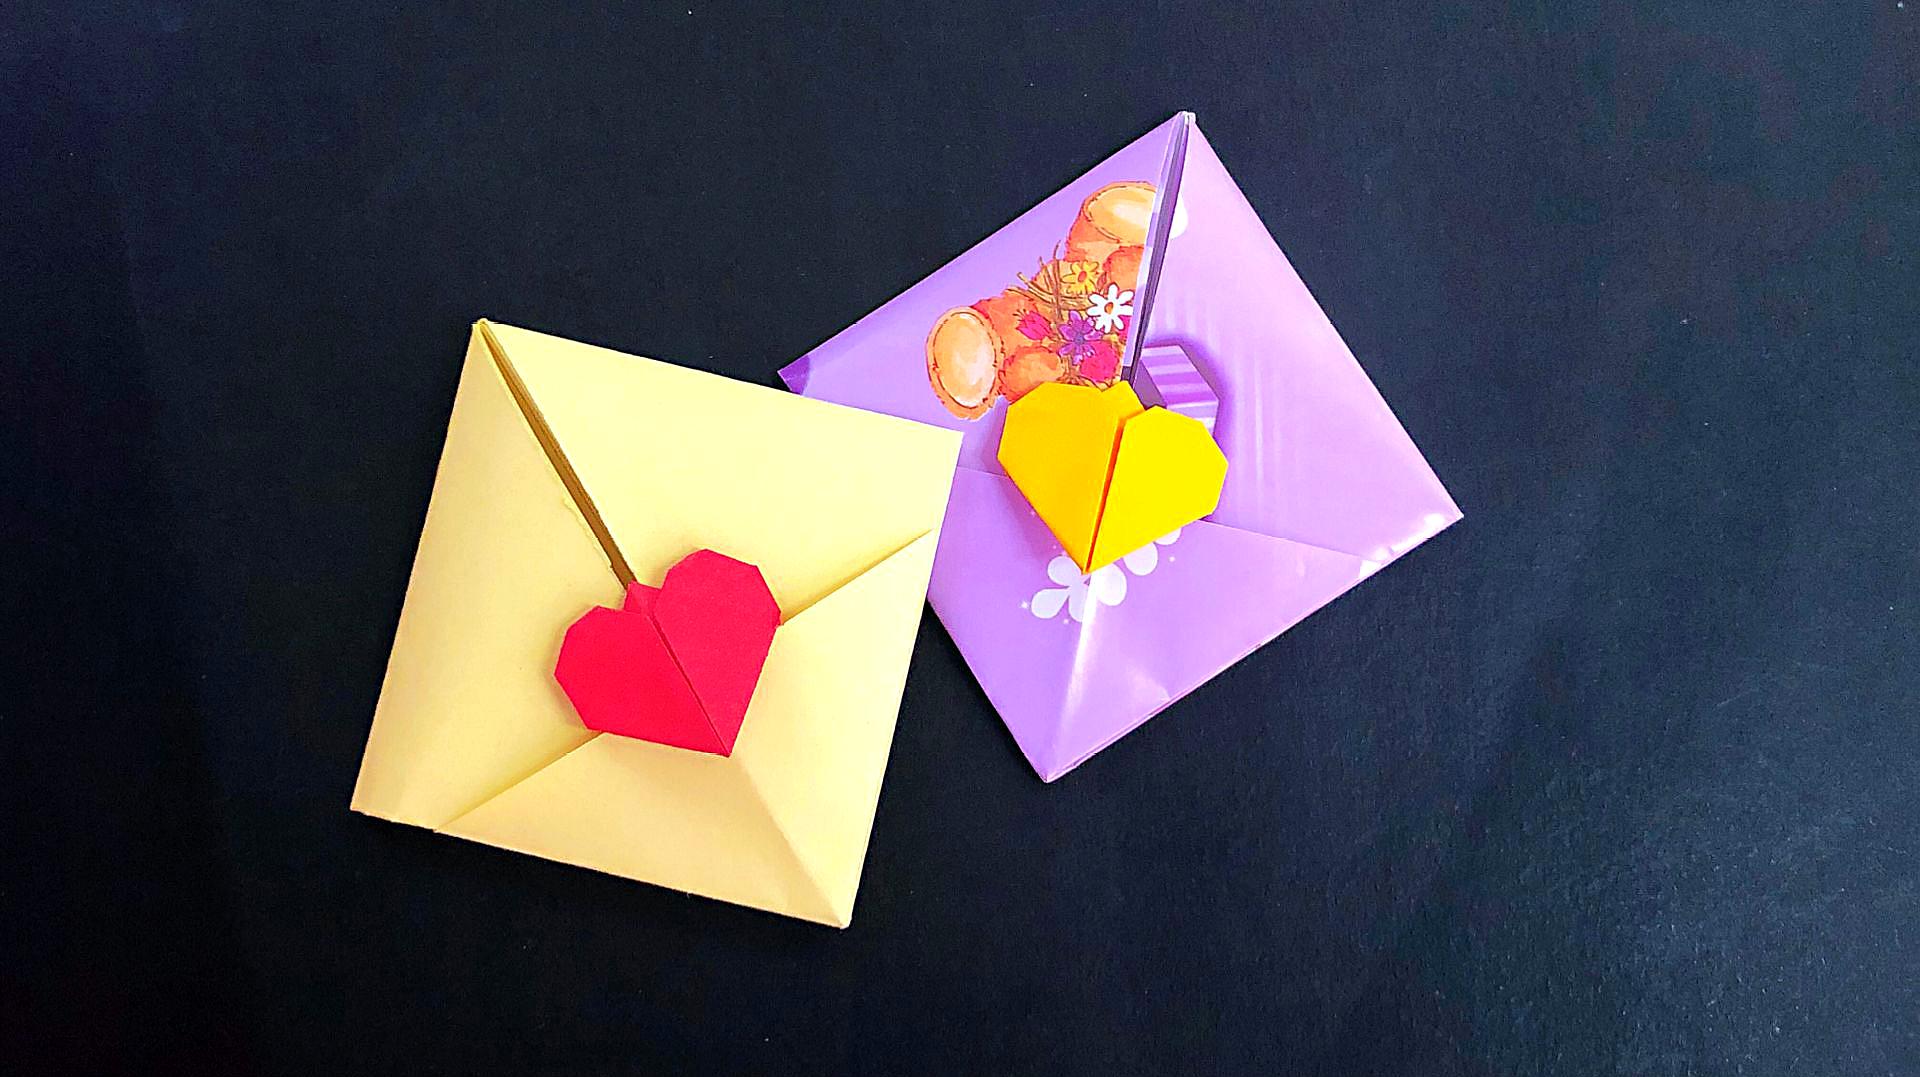 折纸教程:七夕啦,折个自带爱心锁的信封,去表达心意吧!